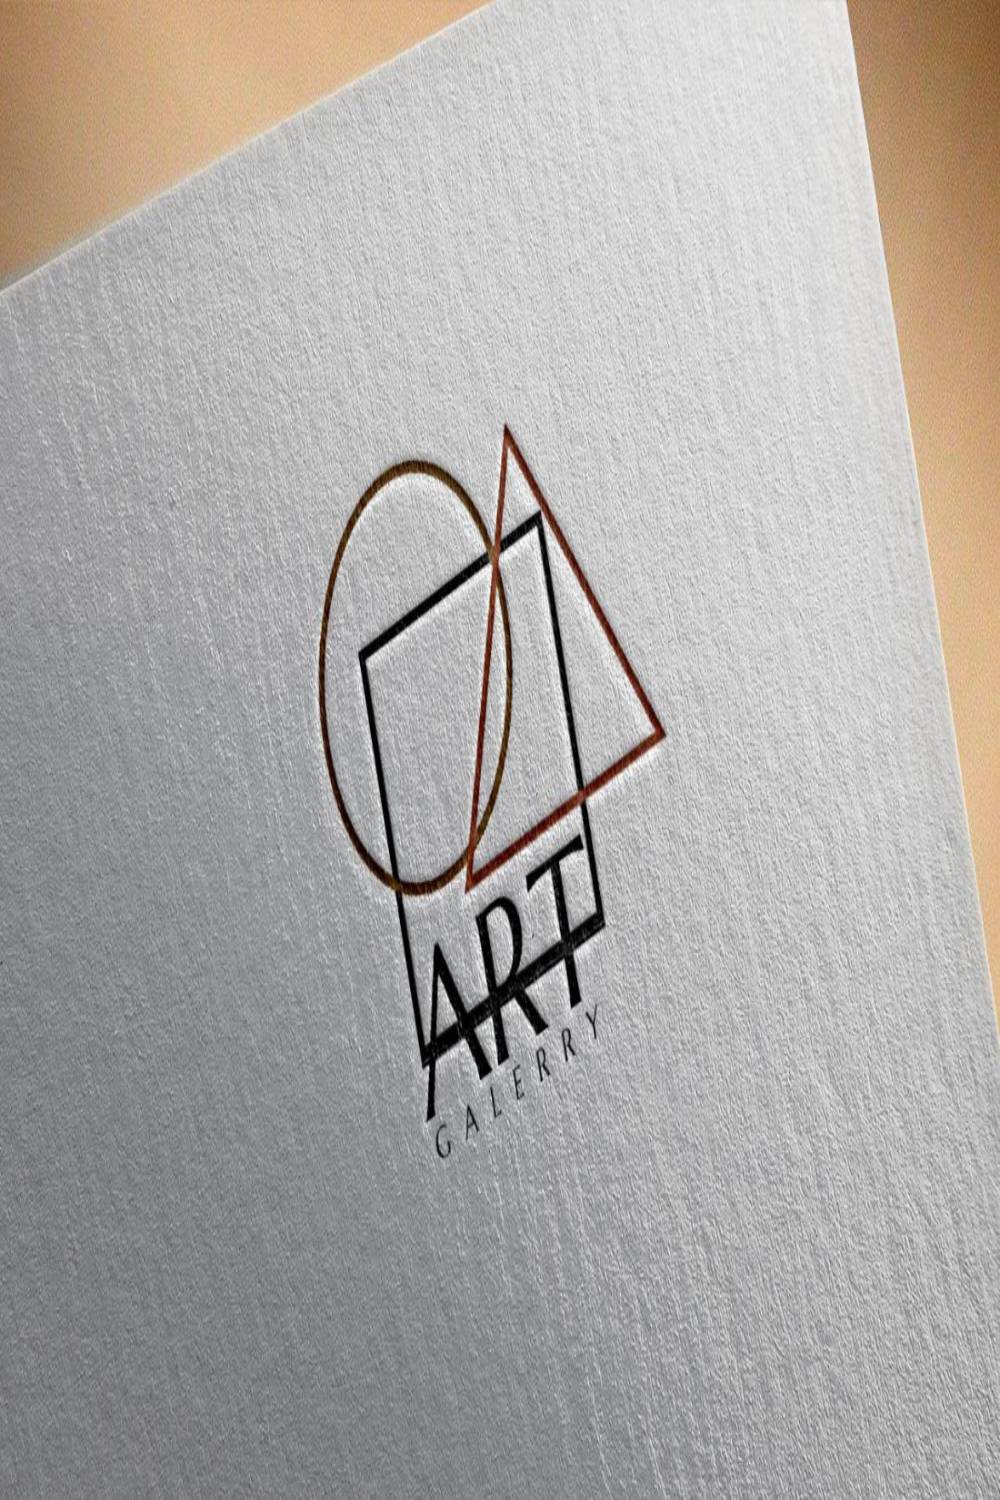 Elegant Art Gallery Logo Design pinterest image.